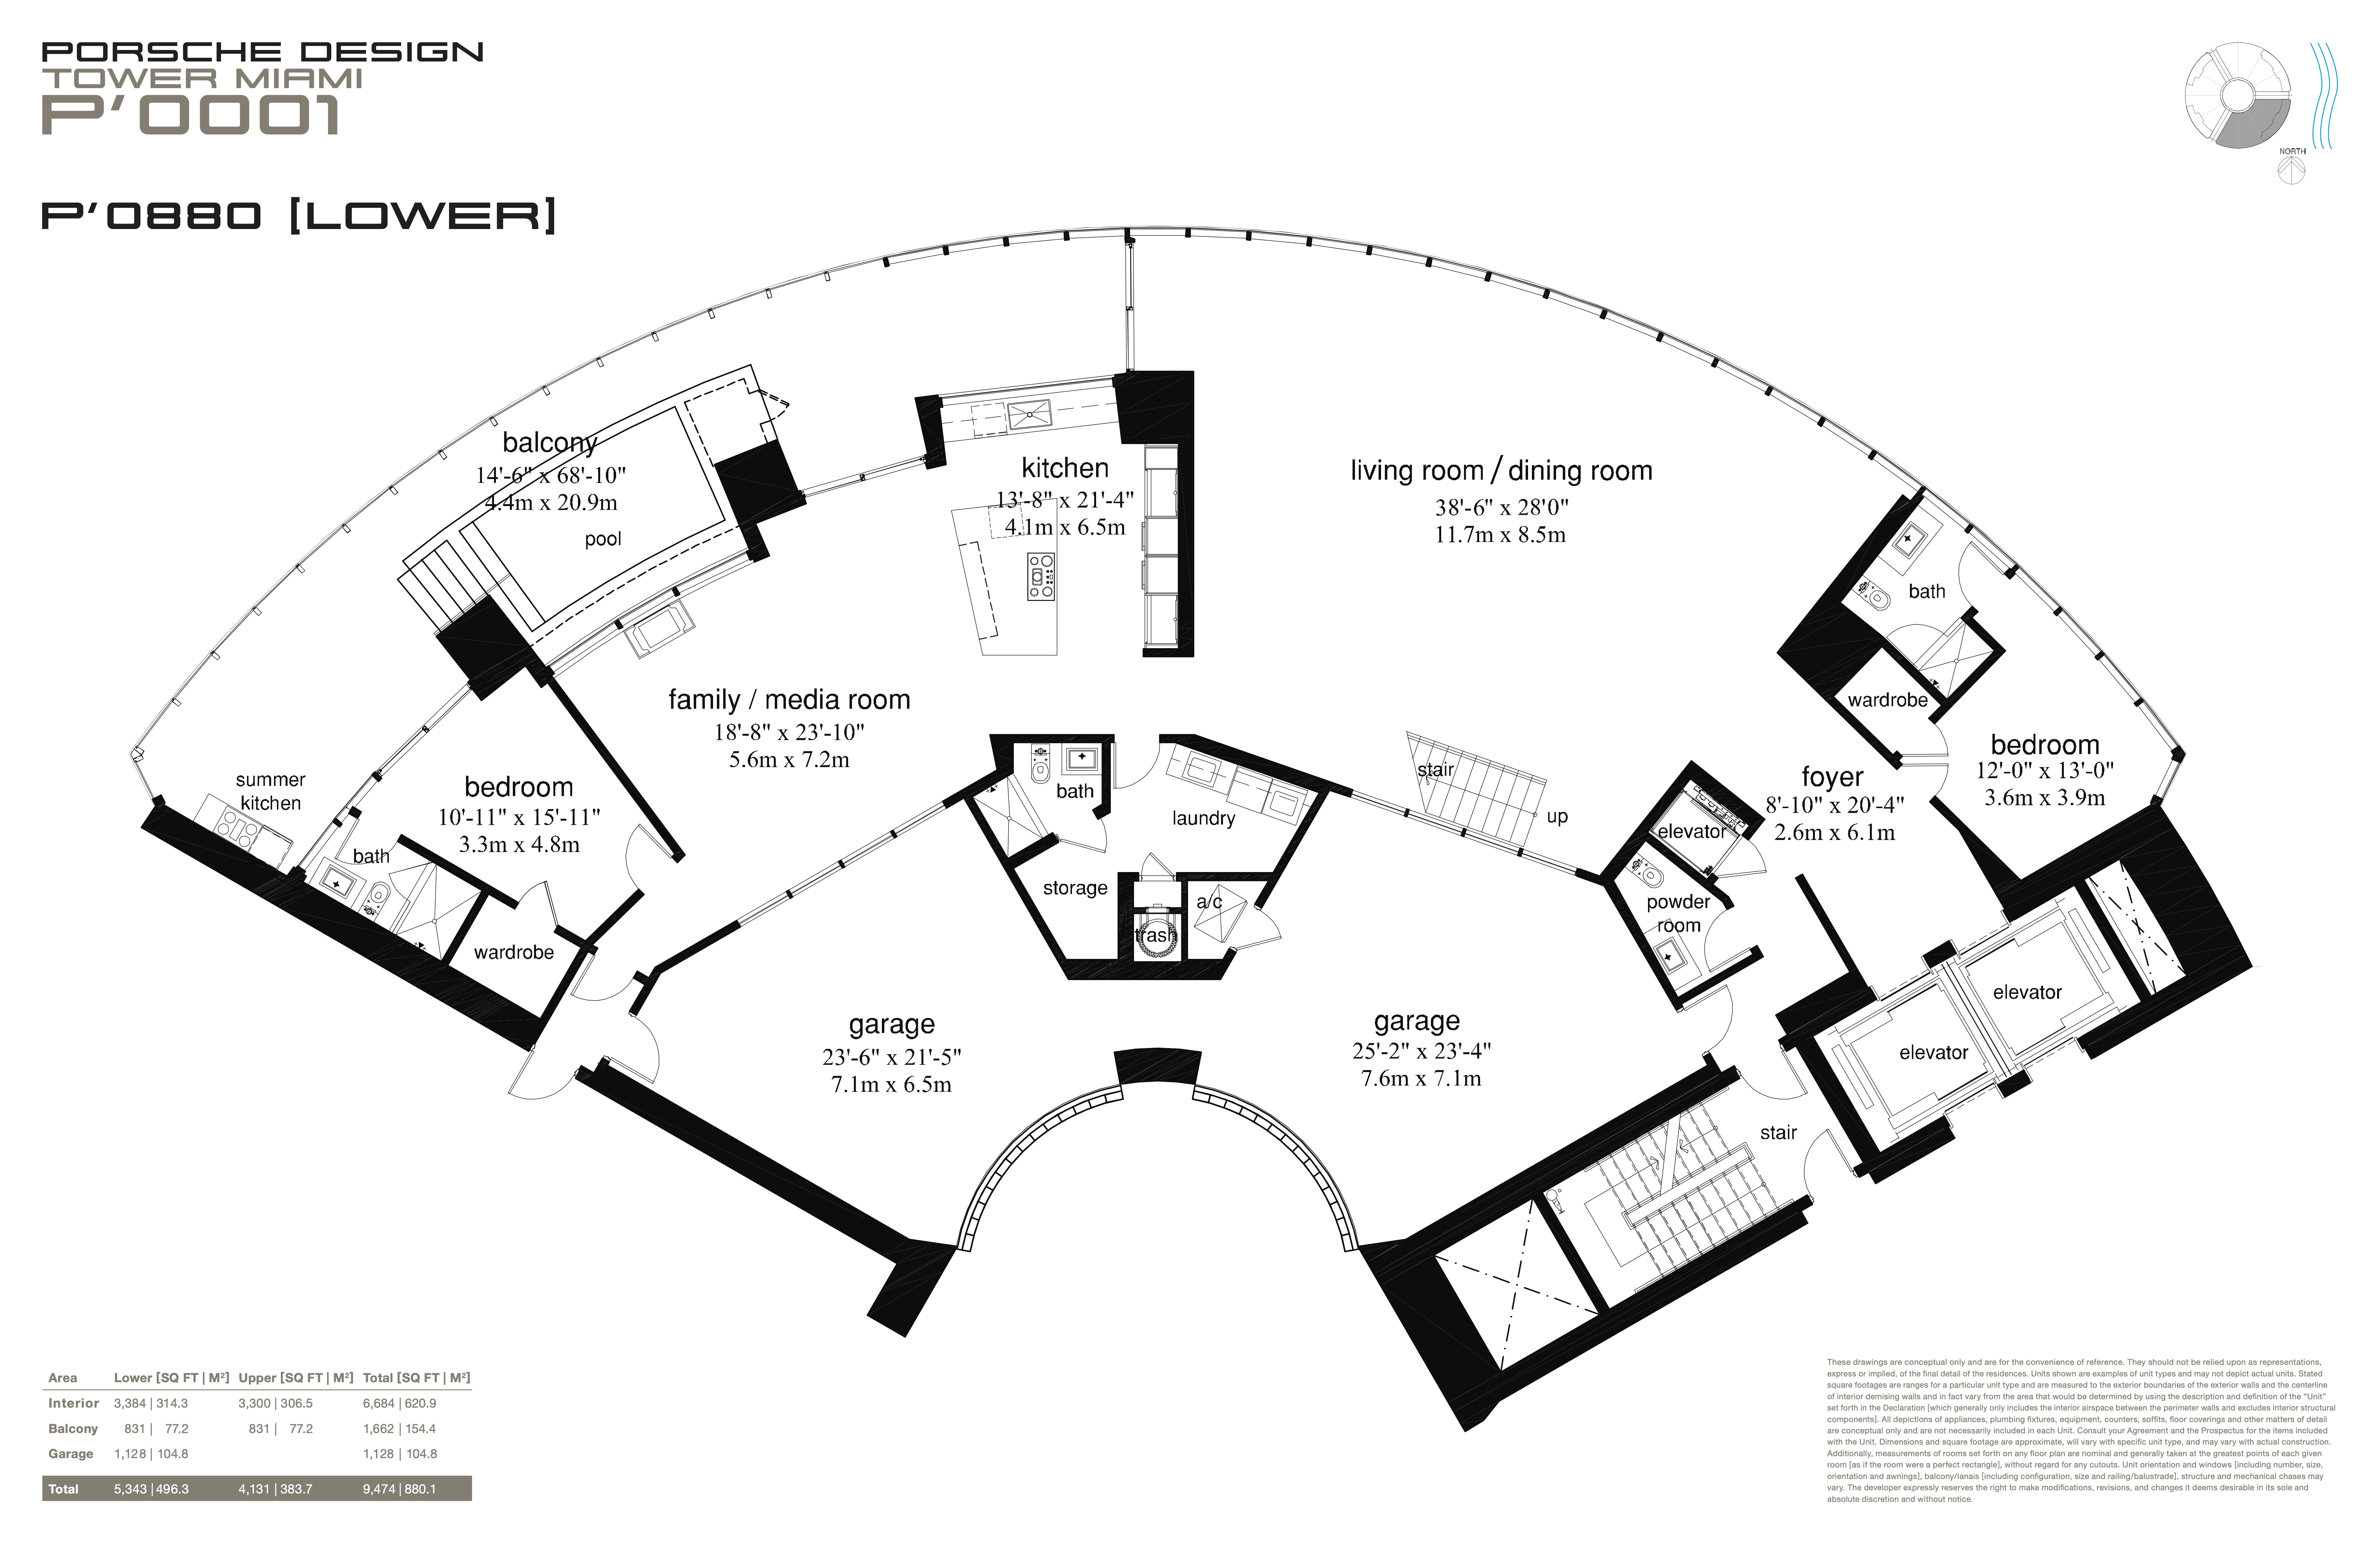 Floor Plan for Porsche Design Tower Miami Floorplans, P' 0880 Lower